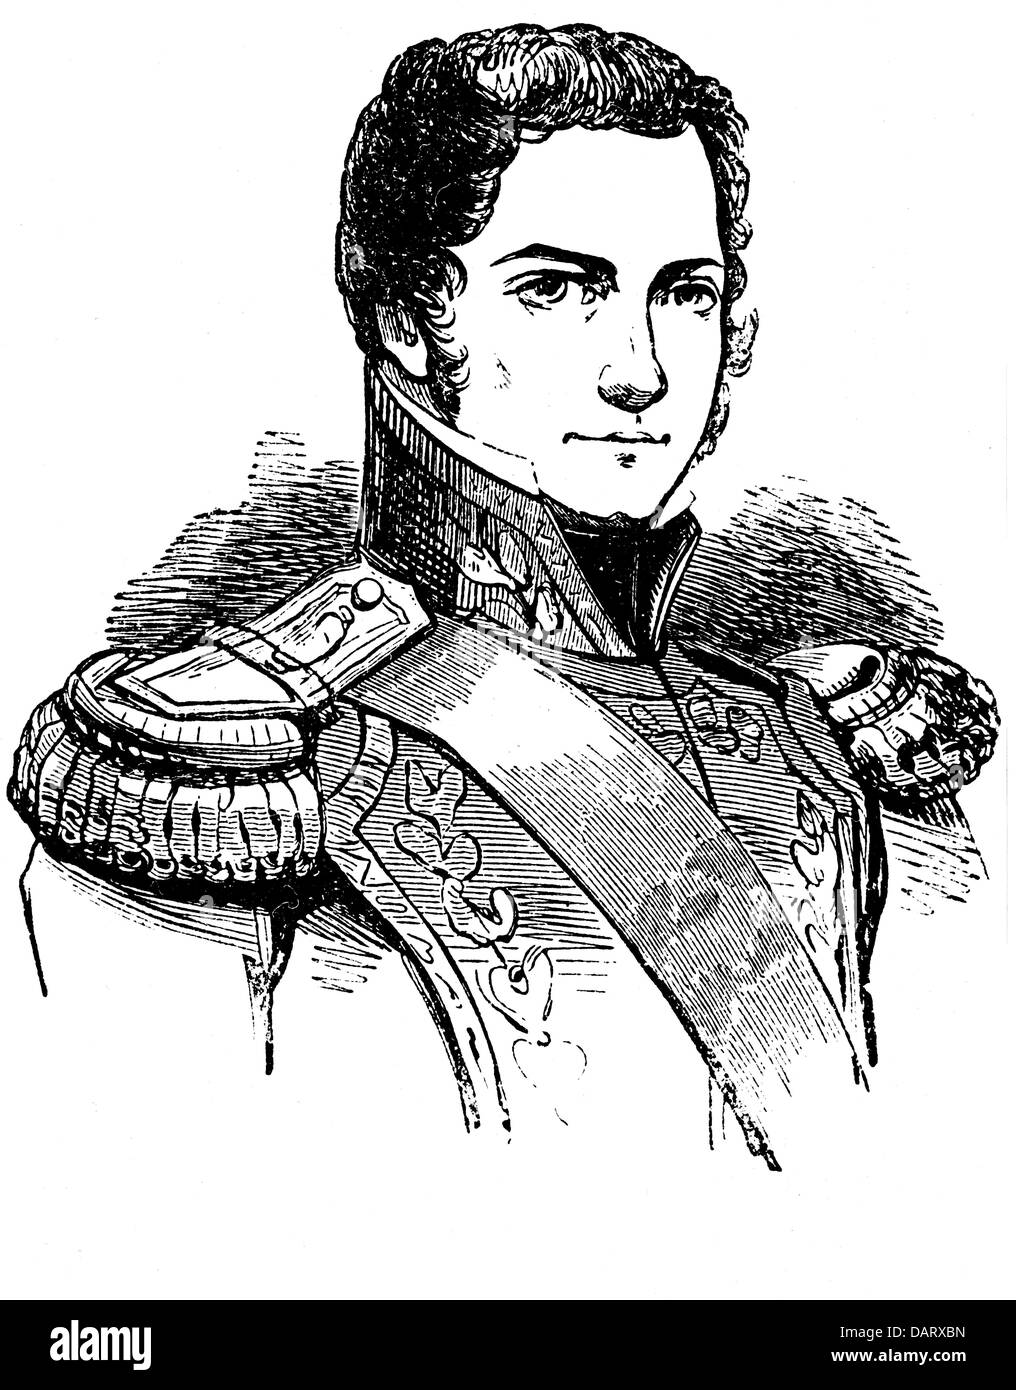 Rosas, Juan Manuel de, 30.3.1793 - 14.03.1877, dictador argentino, retrato, grabado en madera, antes de 1853, Foto de stock